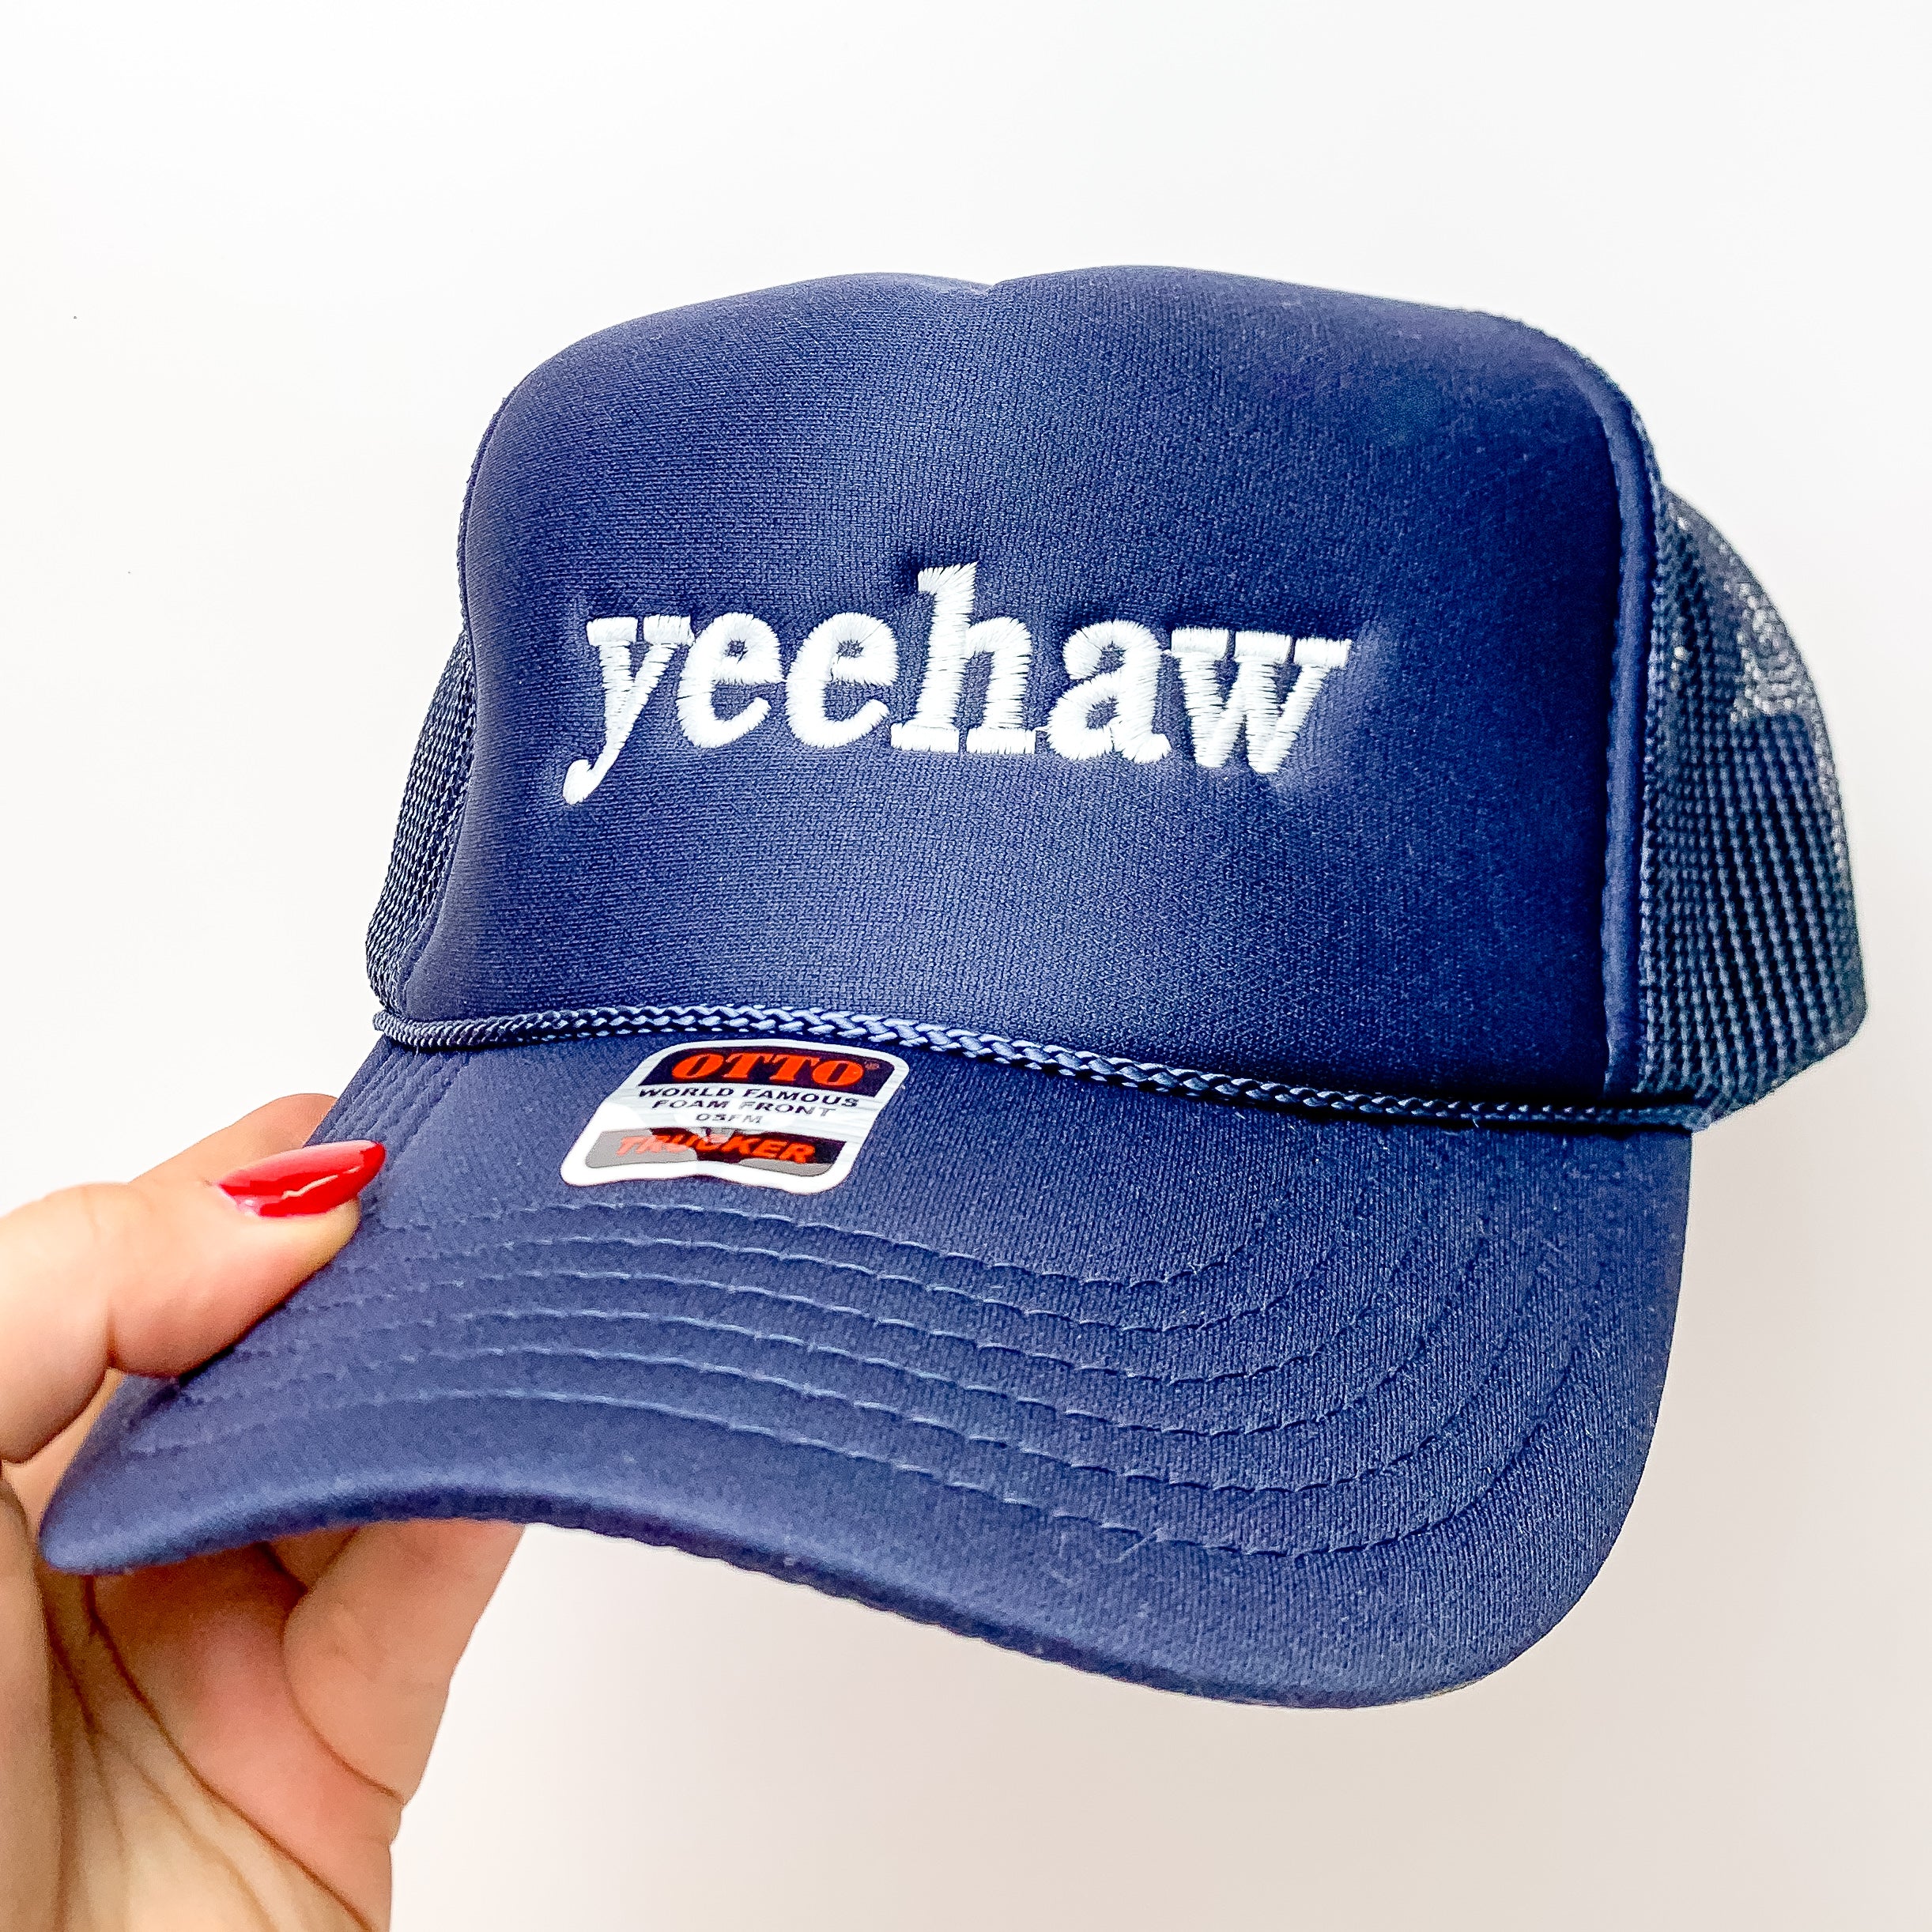 Yeehaw Foam Trucker Hat in Blue and White